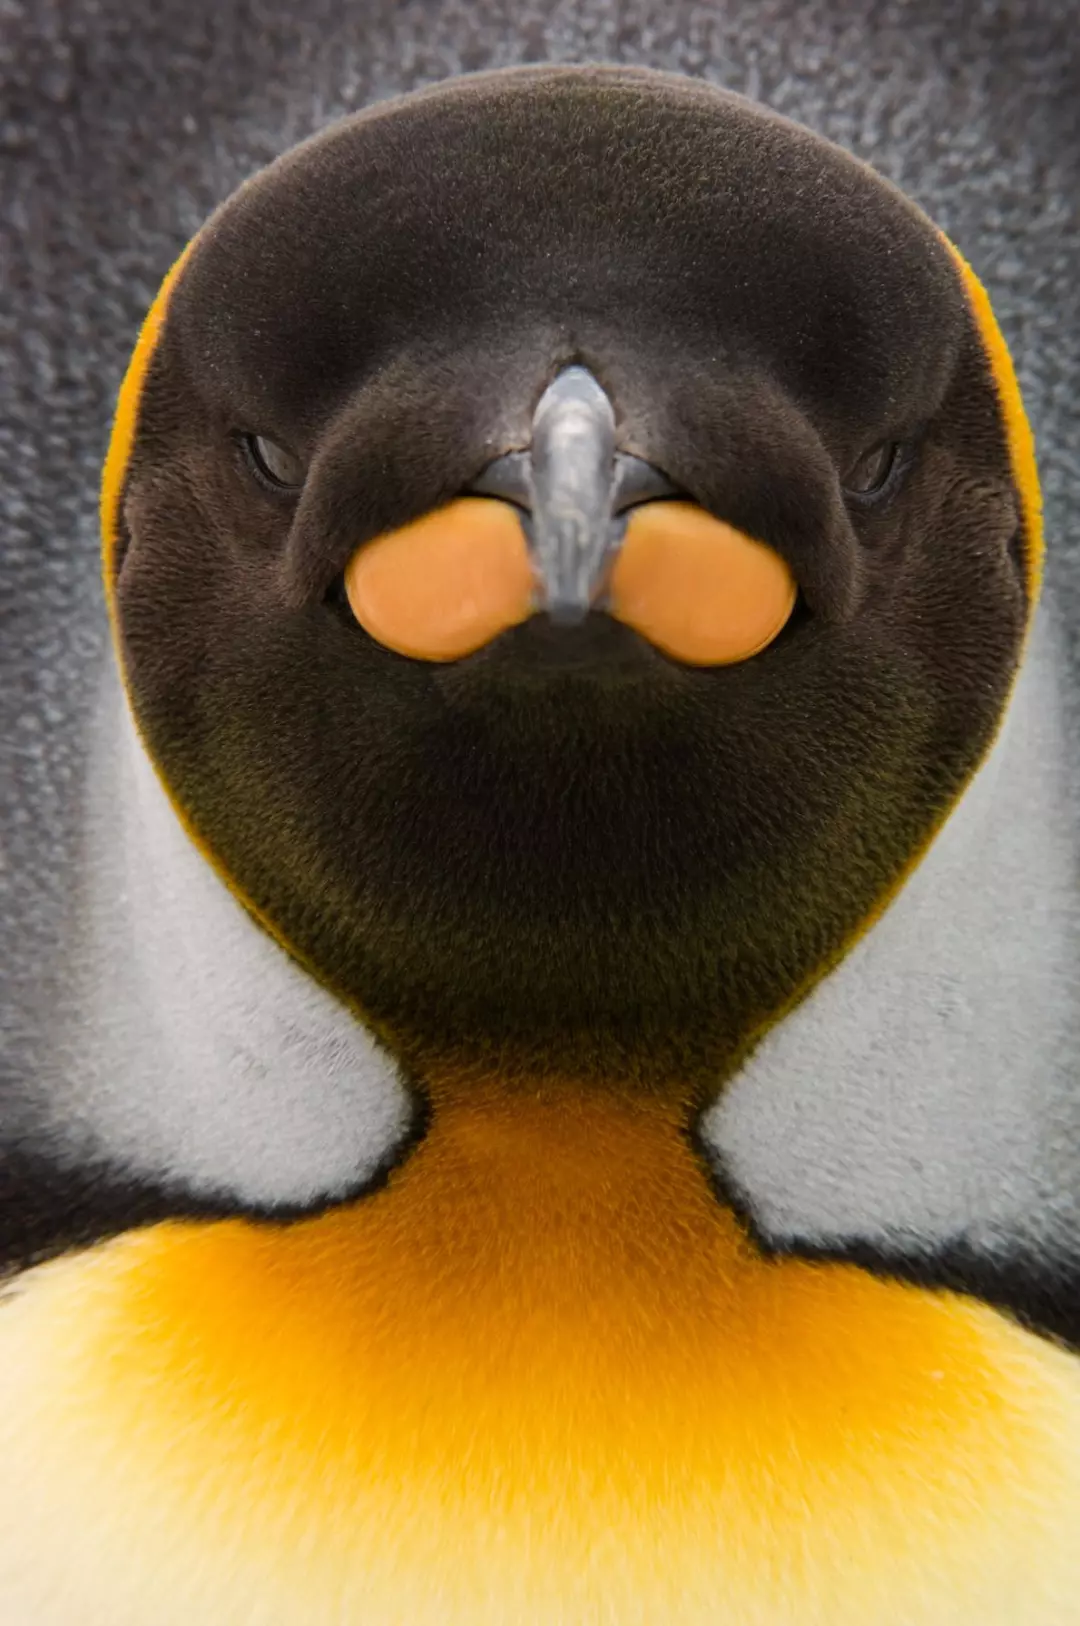 王企鹅瞳孔图片